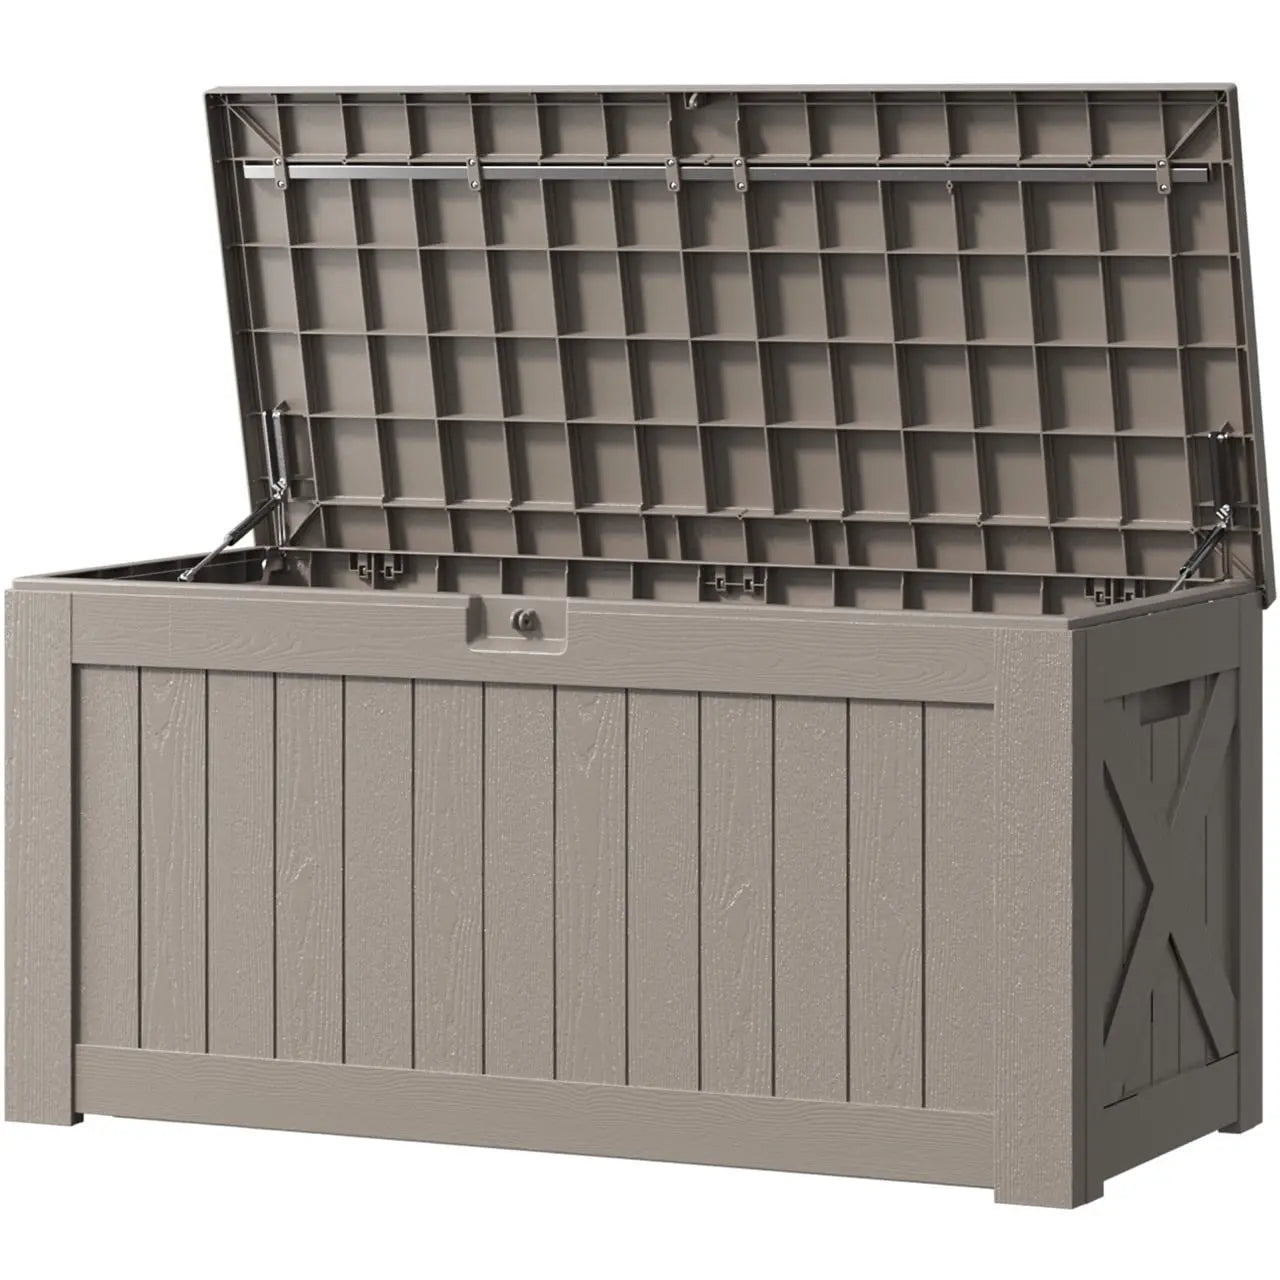 a open 120 gallon outdoor storage deck box